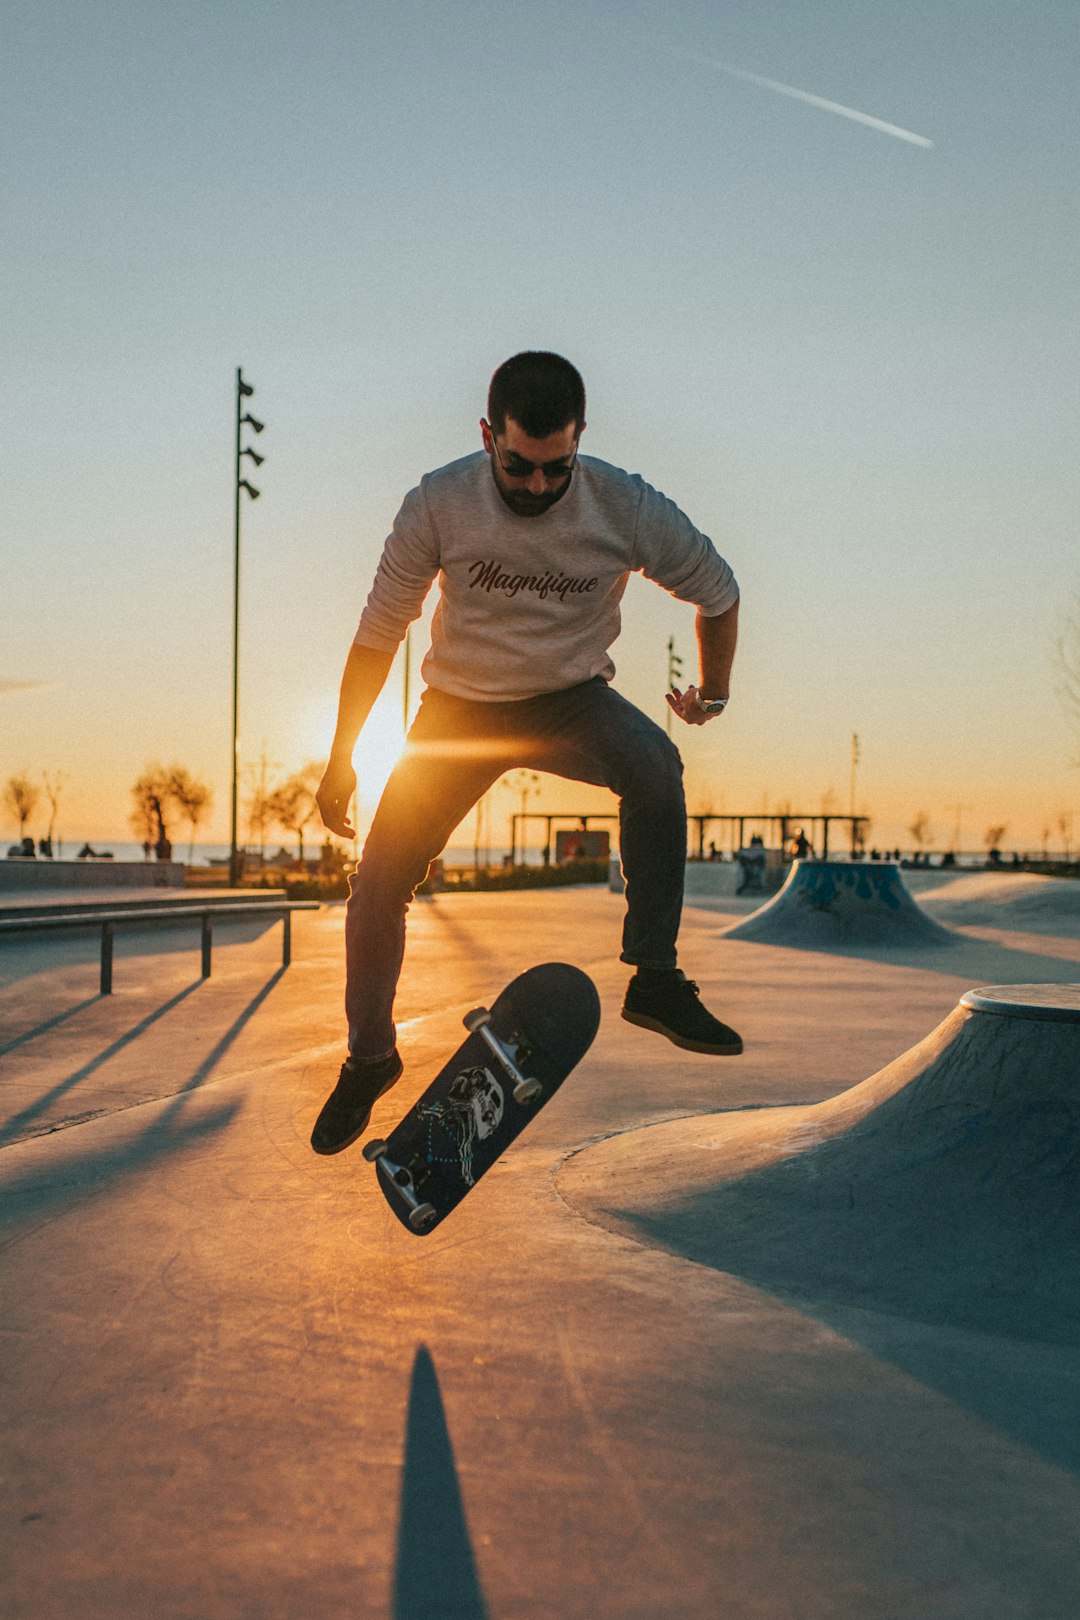 photo of Bostanlı Skateboarding near Asansör